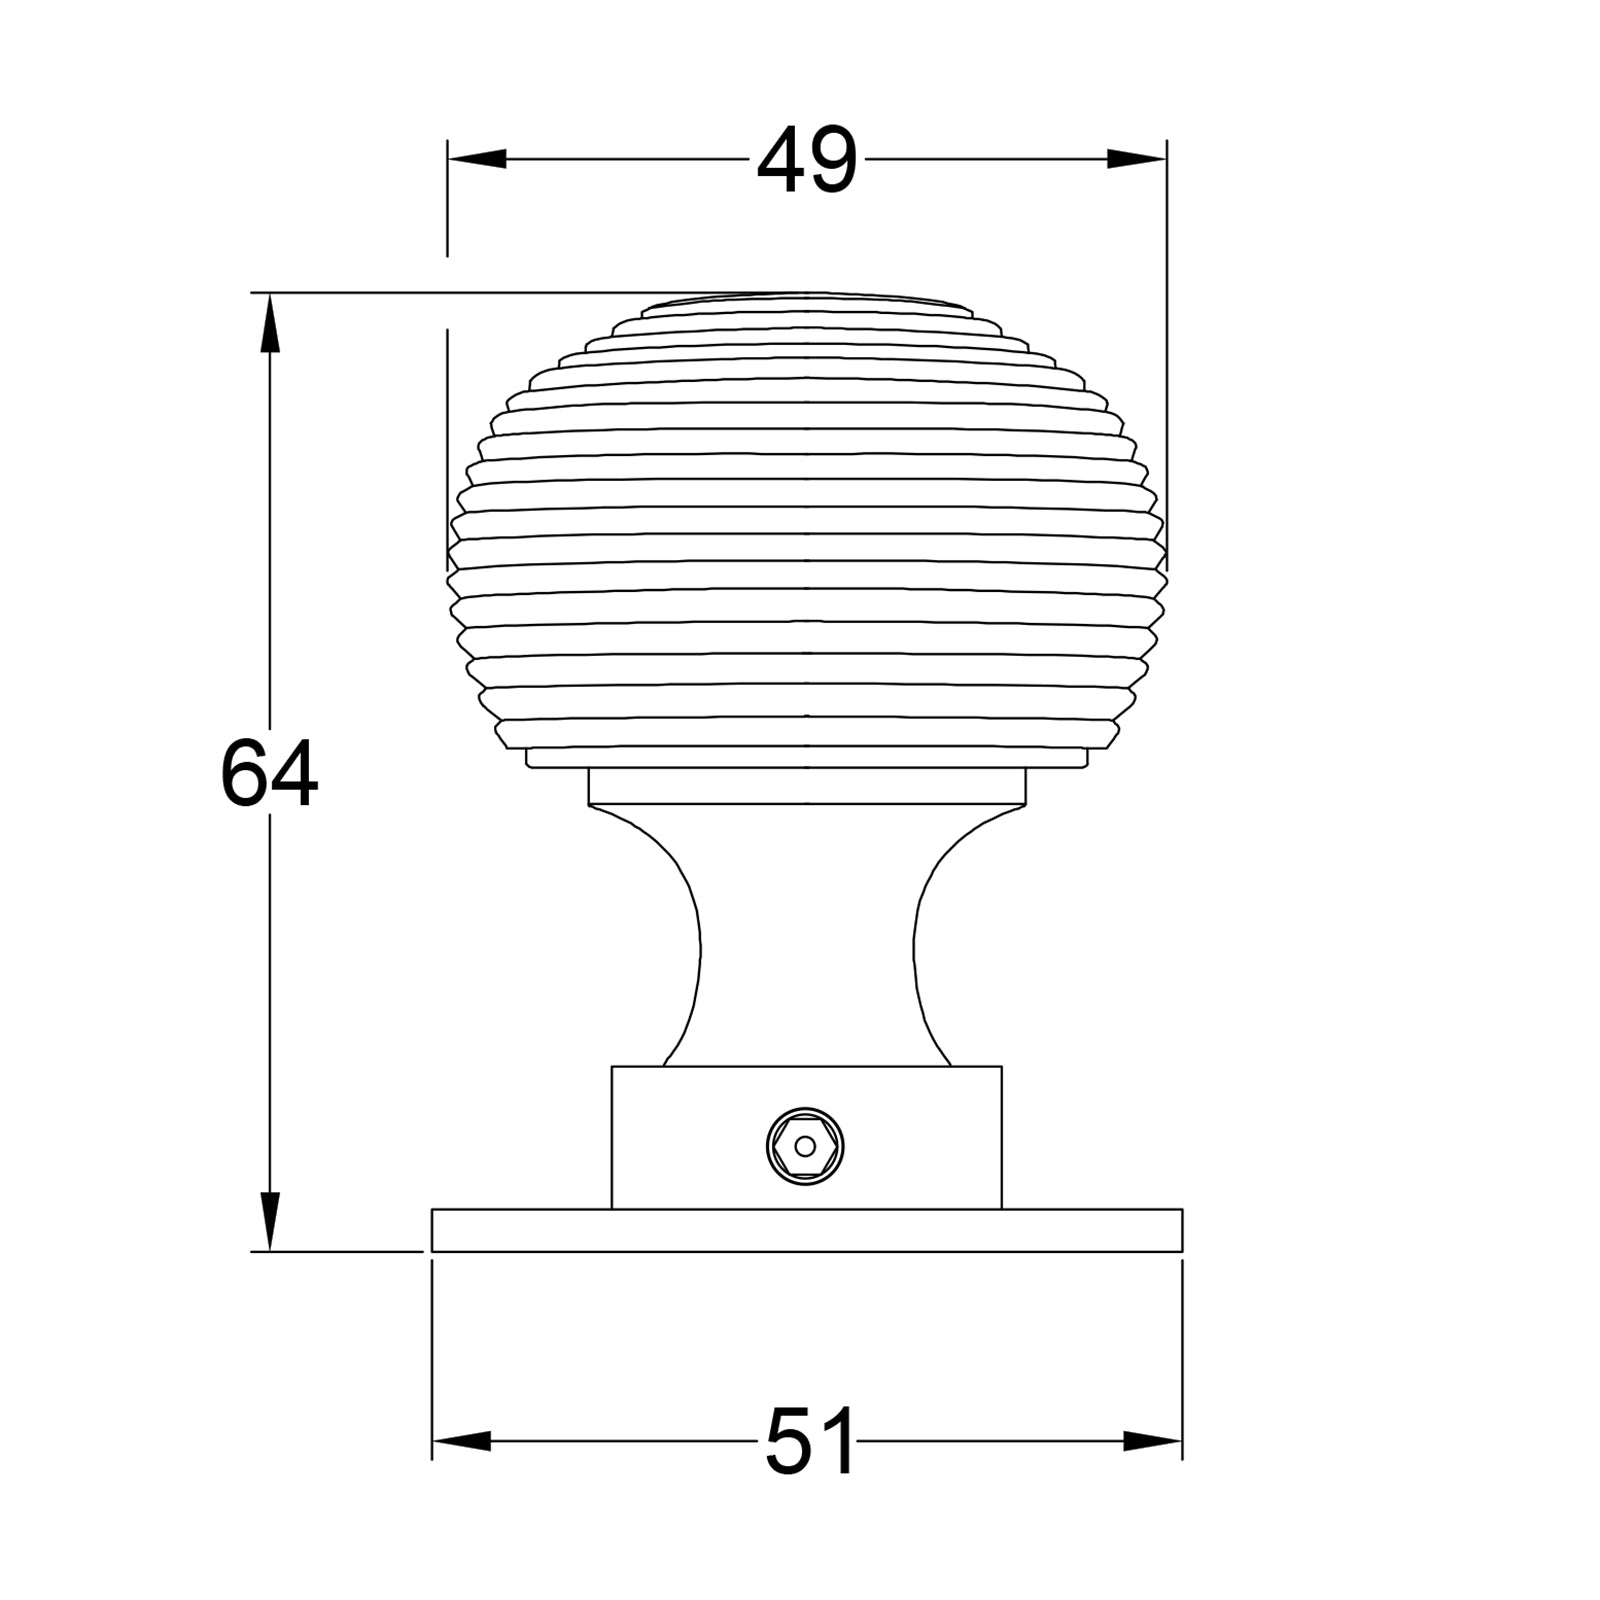 Dimension drawing of Beehive Bronze door knob SHOW